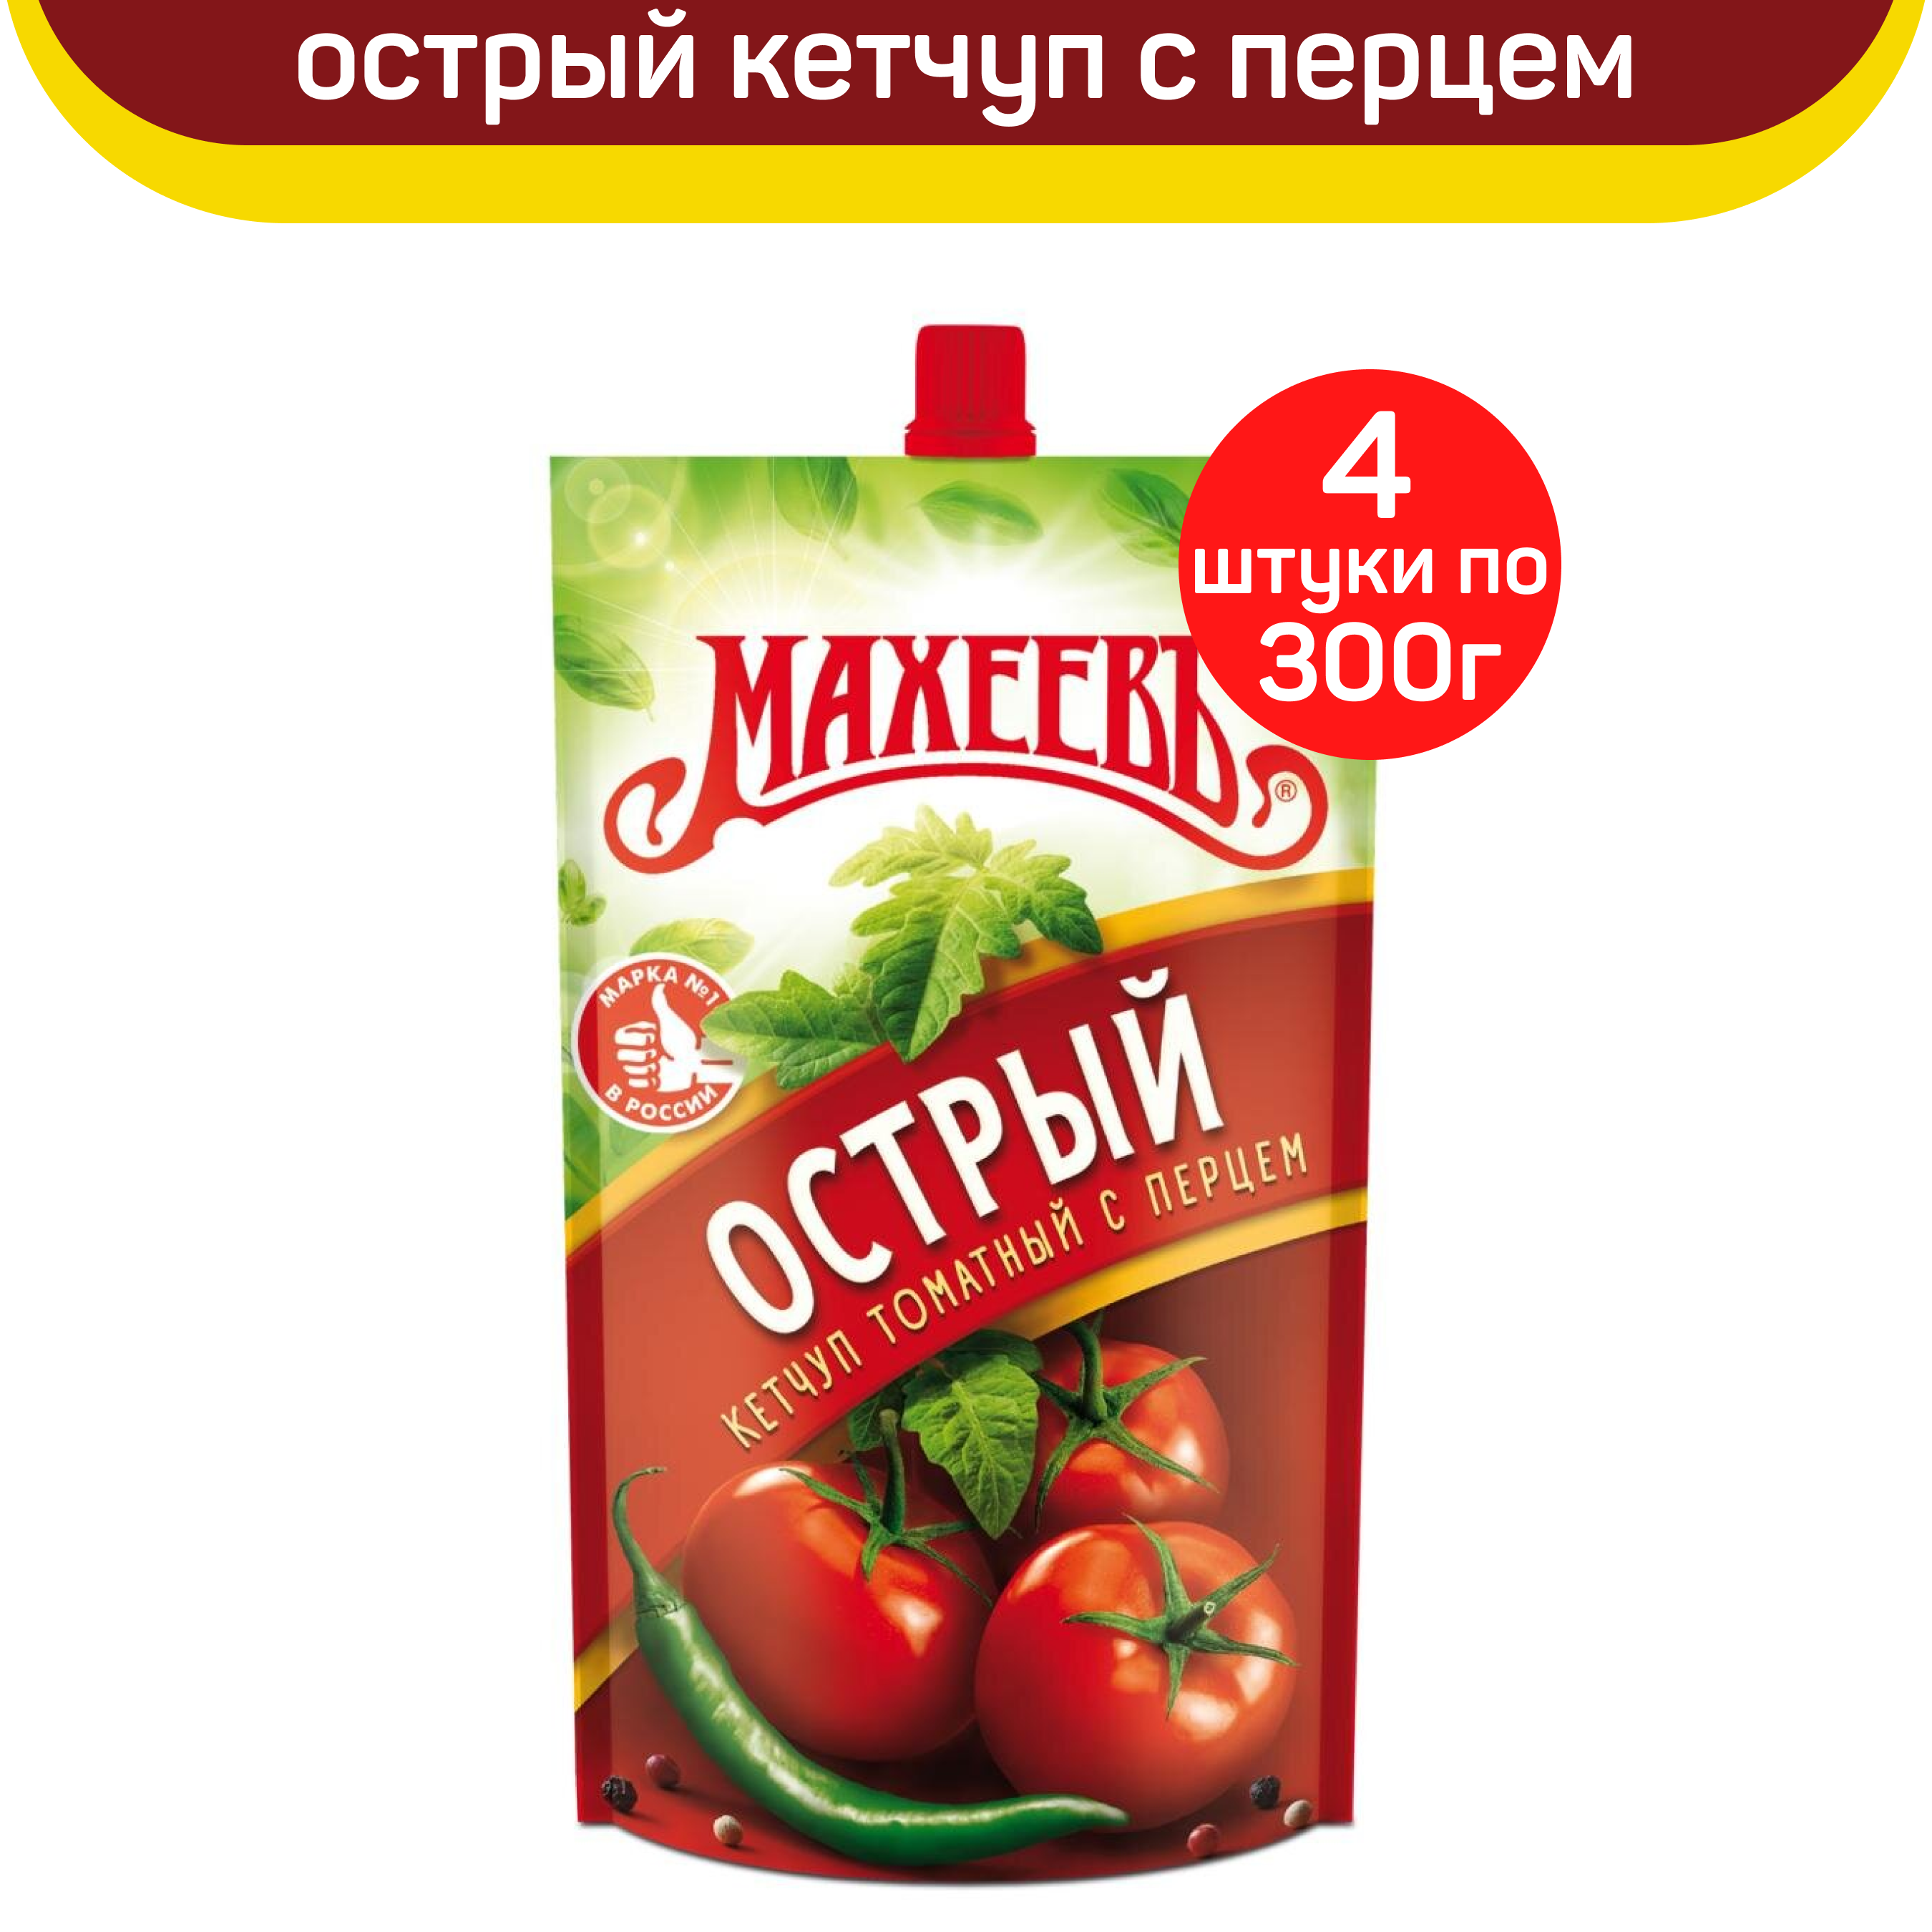 Кетчуп томатный Махеевъ Острый, с перцем, 4 шт по 300 г